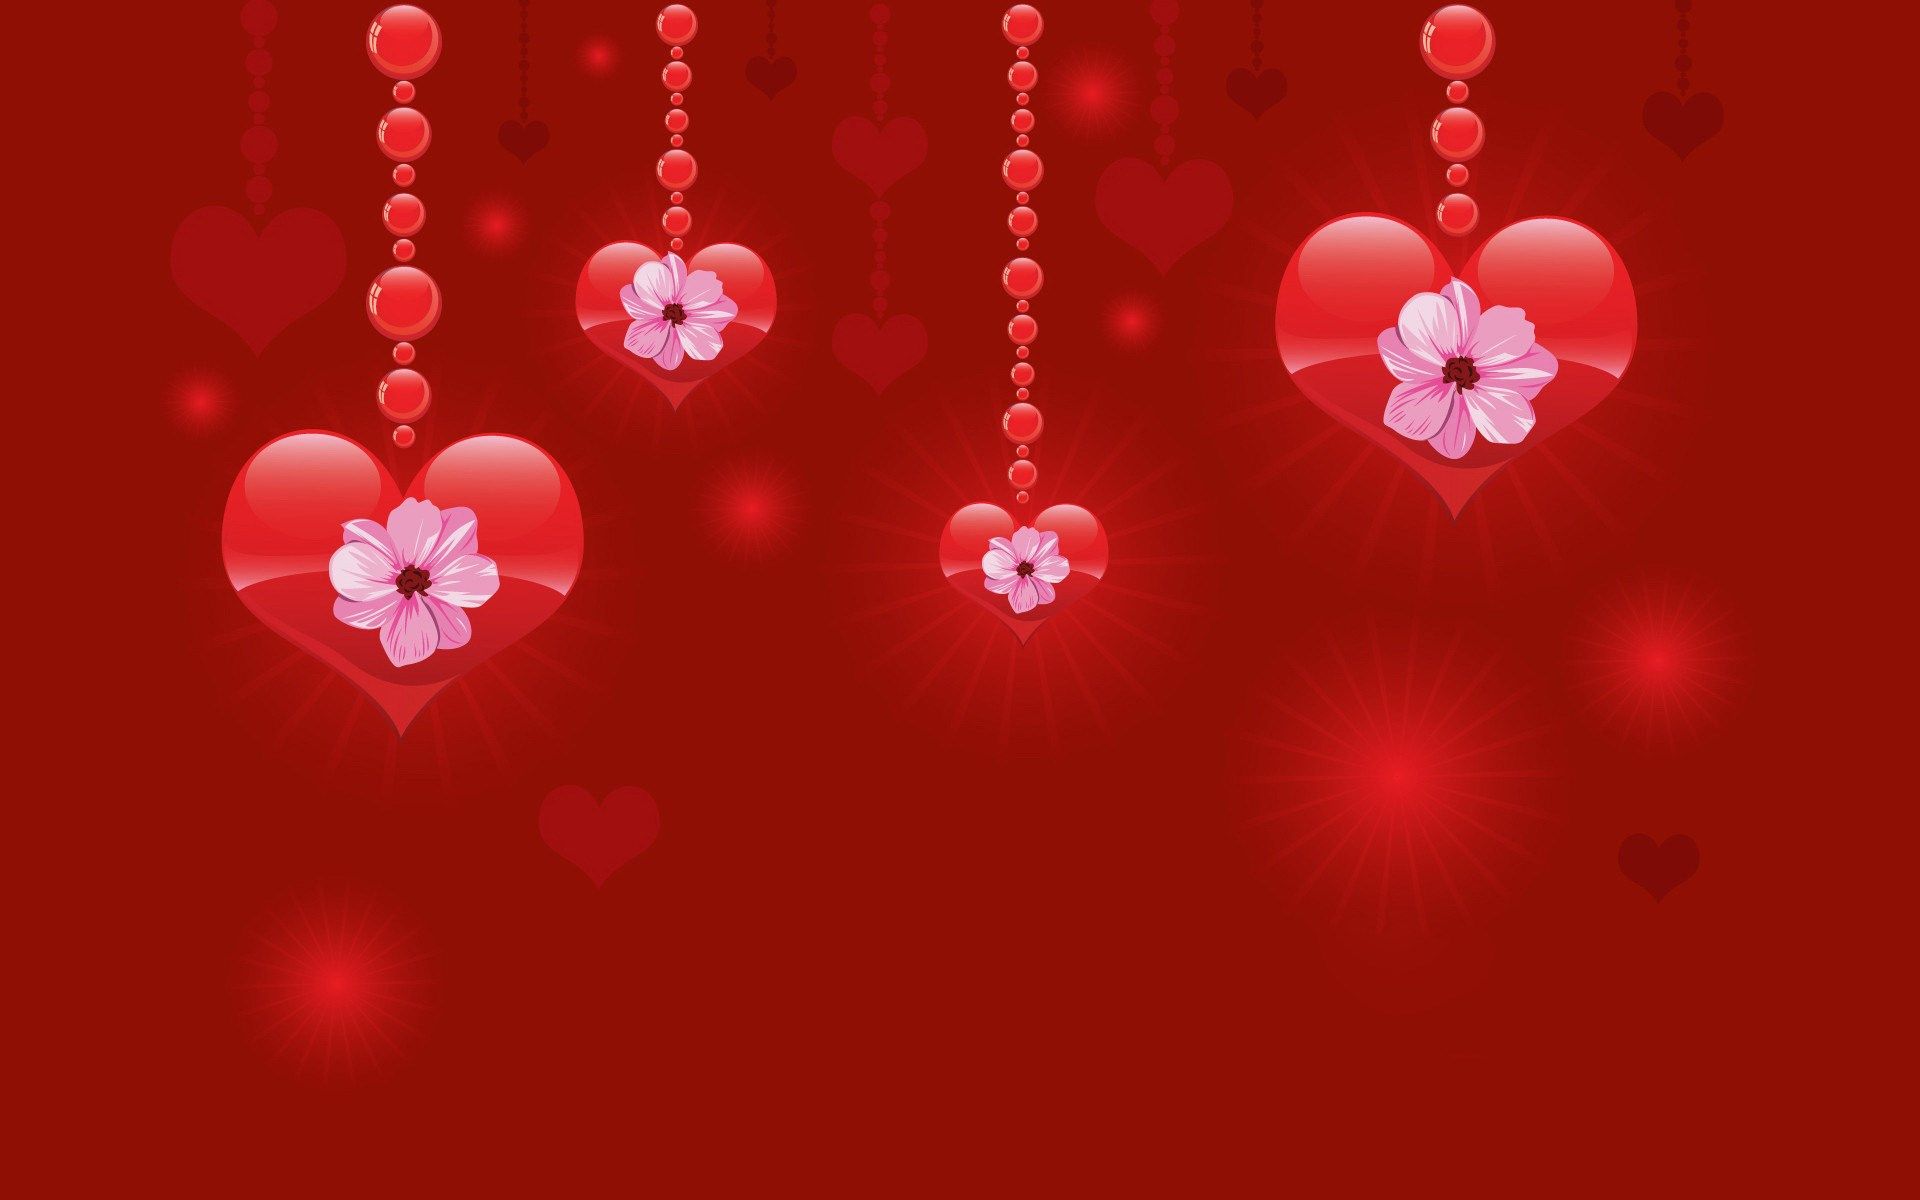 Valentines Desktop Wallpaper On Valentines Day Wallpaper Floral. Valentines wallpaper, Happy valentines day wishes, Happy valentines day image